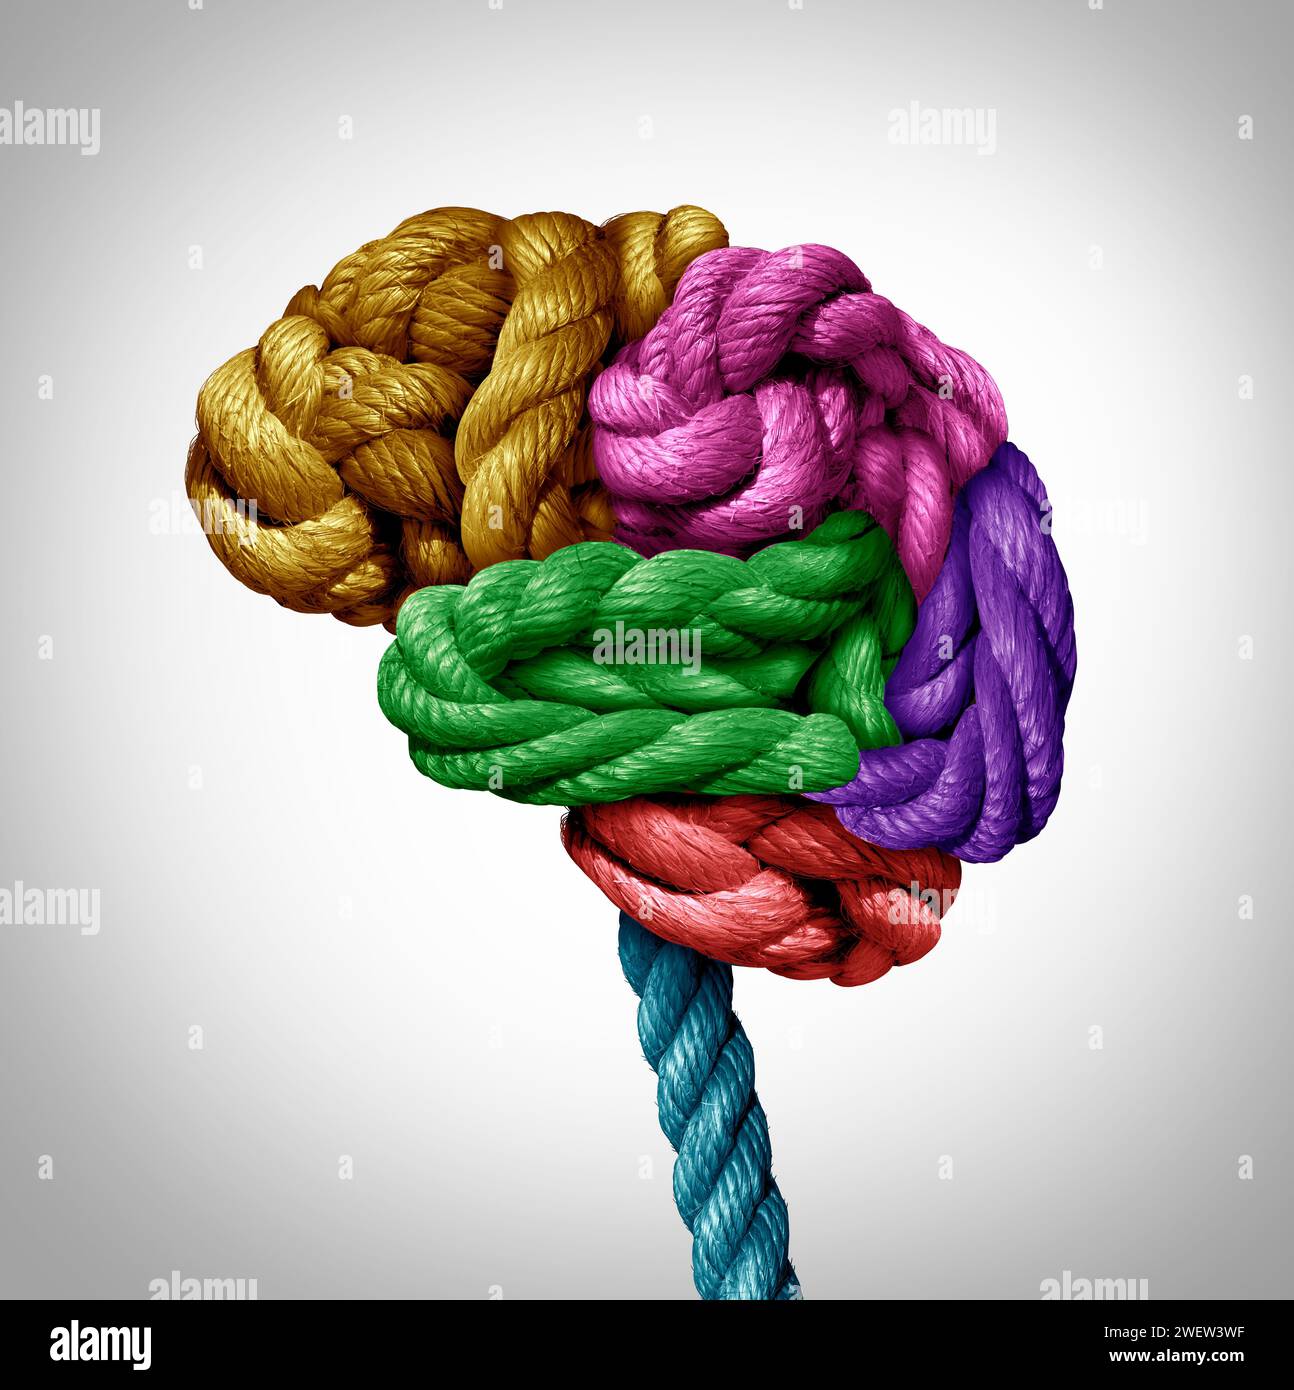 Spectre de la santé mentale comme un cerveau enchevêtré de diverses cordes tordues dans un organe de pensée humain comme un symbole cognitif pour la fonction mentale ou l'anxiété Banque D'Images